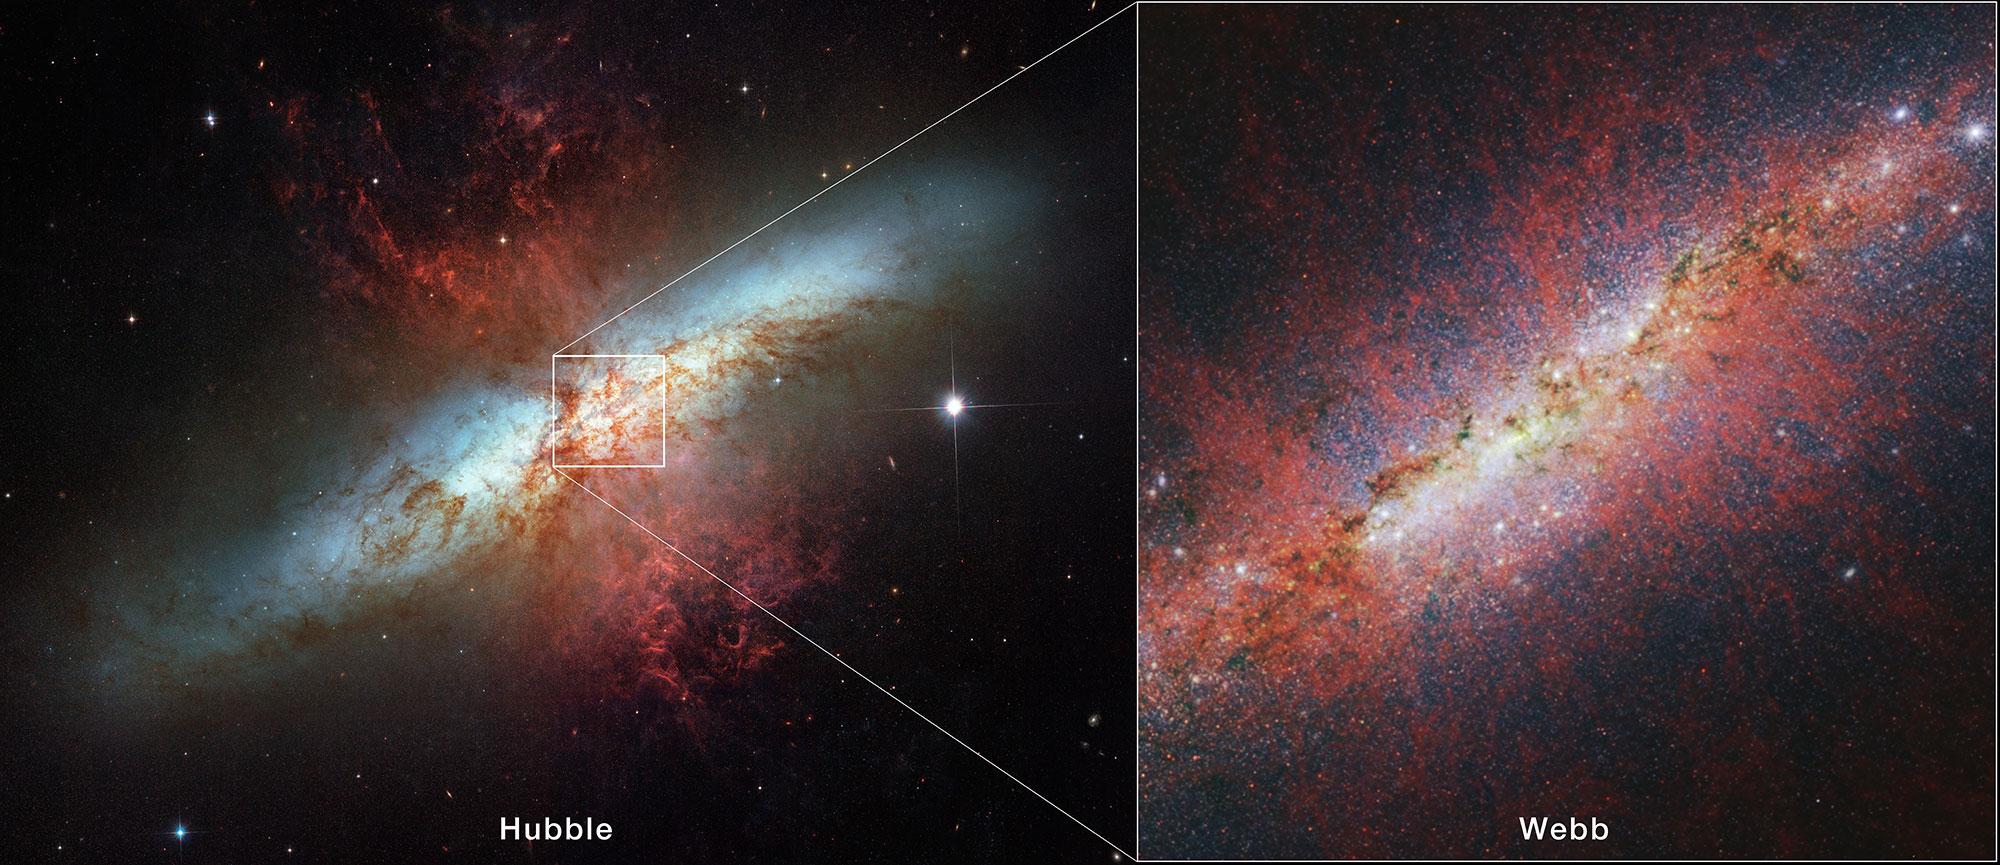 توجد صورةٌ للمجرّة غير الاعتياديّة م82 يساراً، بينما يتوسّع المركز ويُعرَض في صورة تلسكوب جيمس وِبّ الفضائيّ يميناً. تنبثق العديد من الخيوط المُتوهِّجة بالأحمر للخارج من مُستوي المجرّة الحلزونيّة.